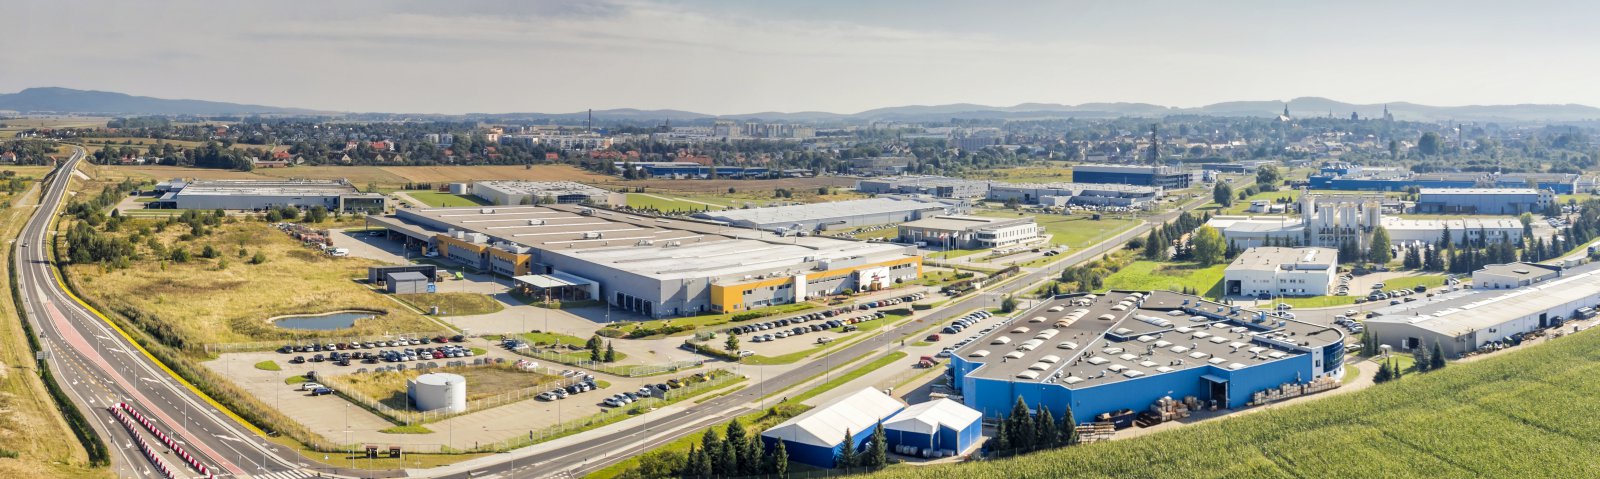 Zakłady przemysłowe z lotu ptaka, w drugim planie panorama miasta